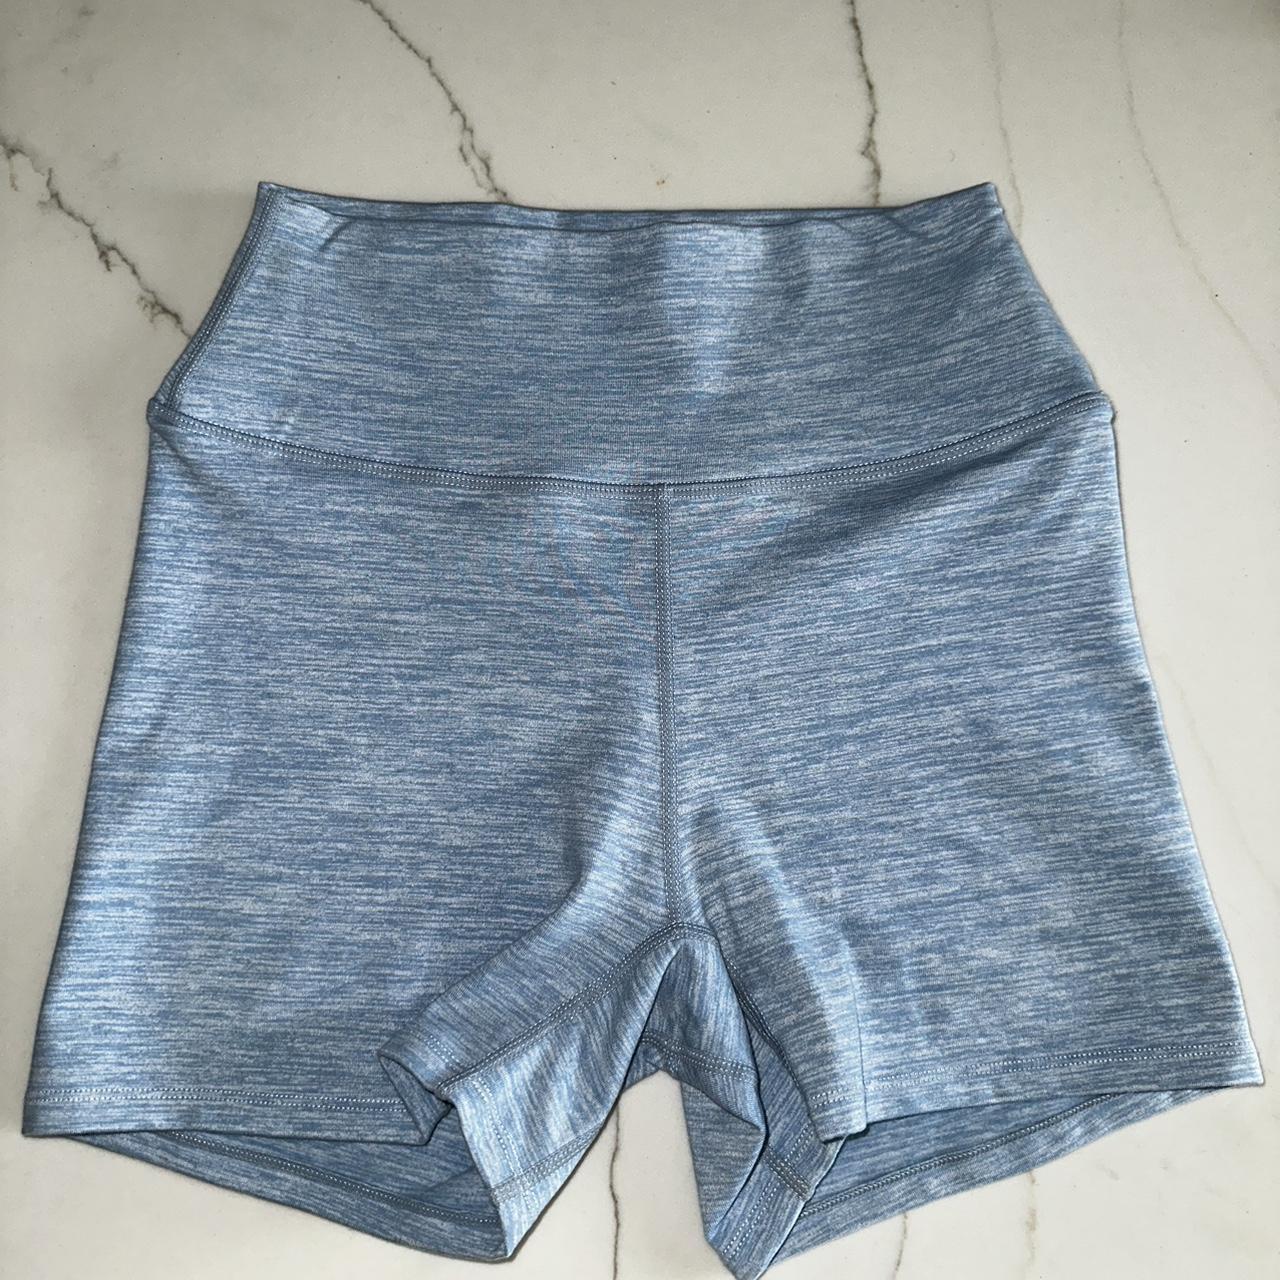 Crop shop boutique shorts Marl shorts 4” size M Best... - Depop